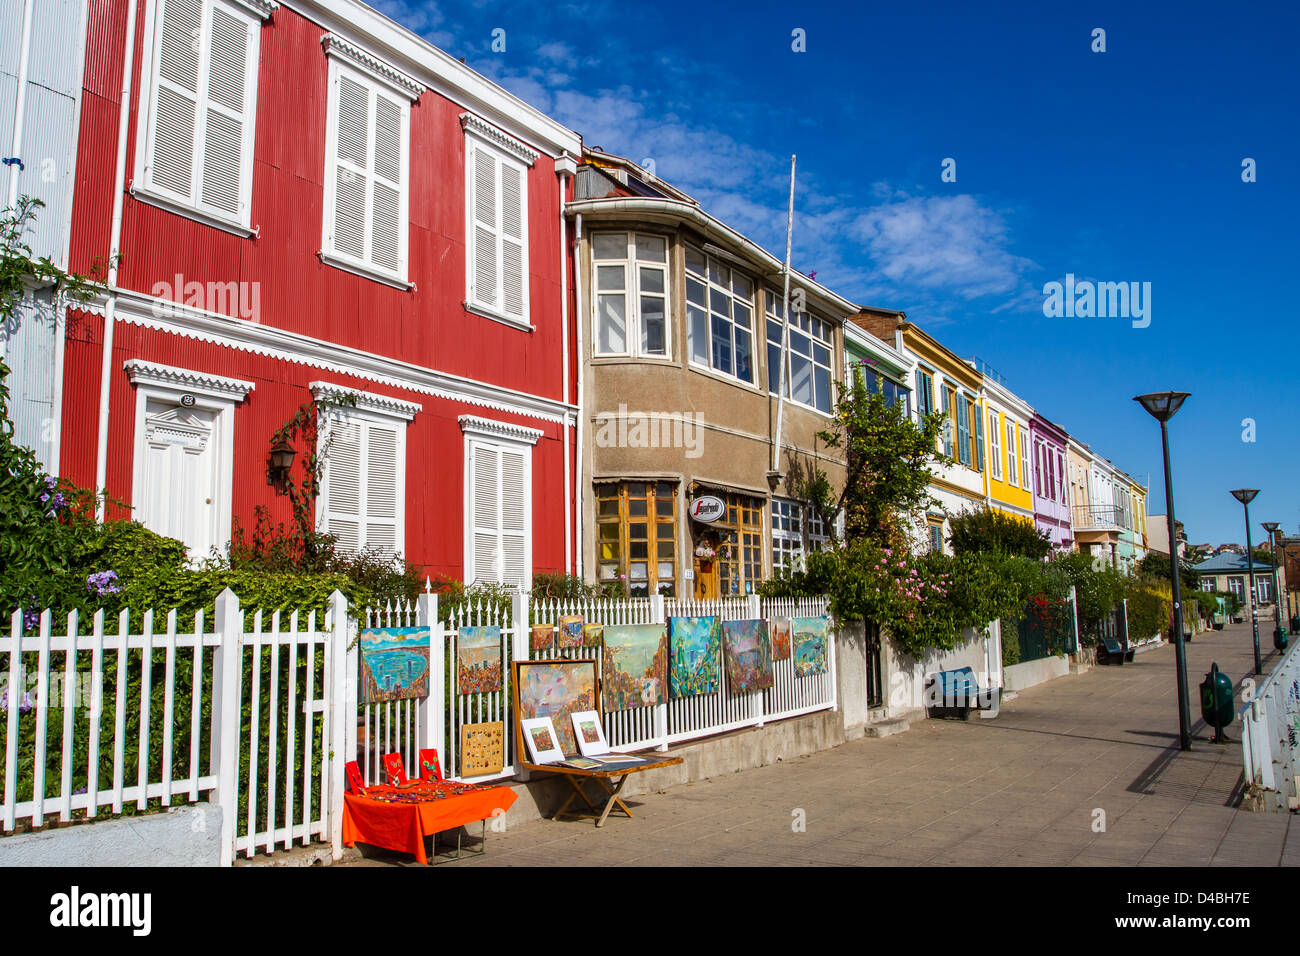 Une rue animée avec une rangée de maisons colorées à Valparaiso, Chili, site du patrimoine mondial de l'UNESCO Banque D'Images